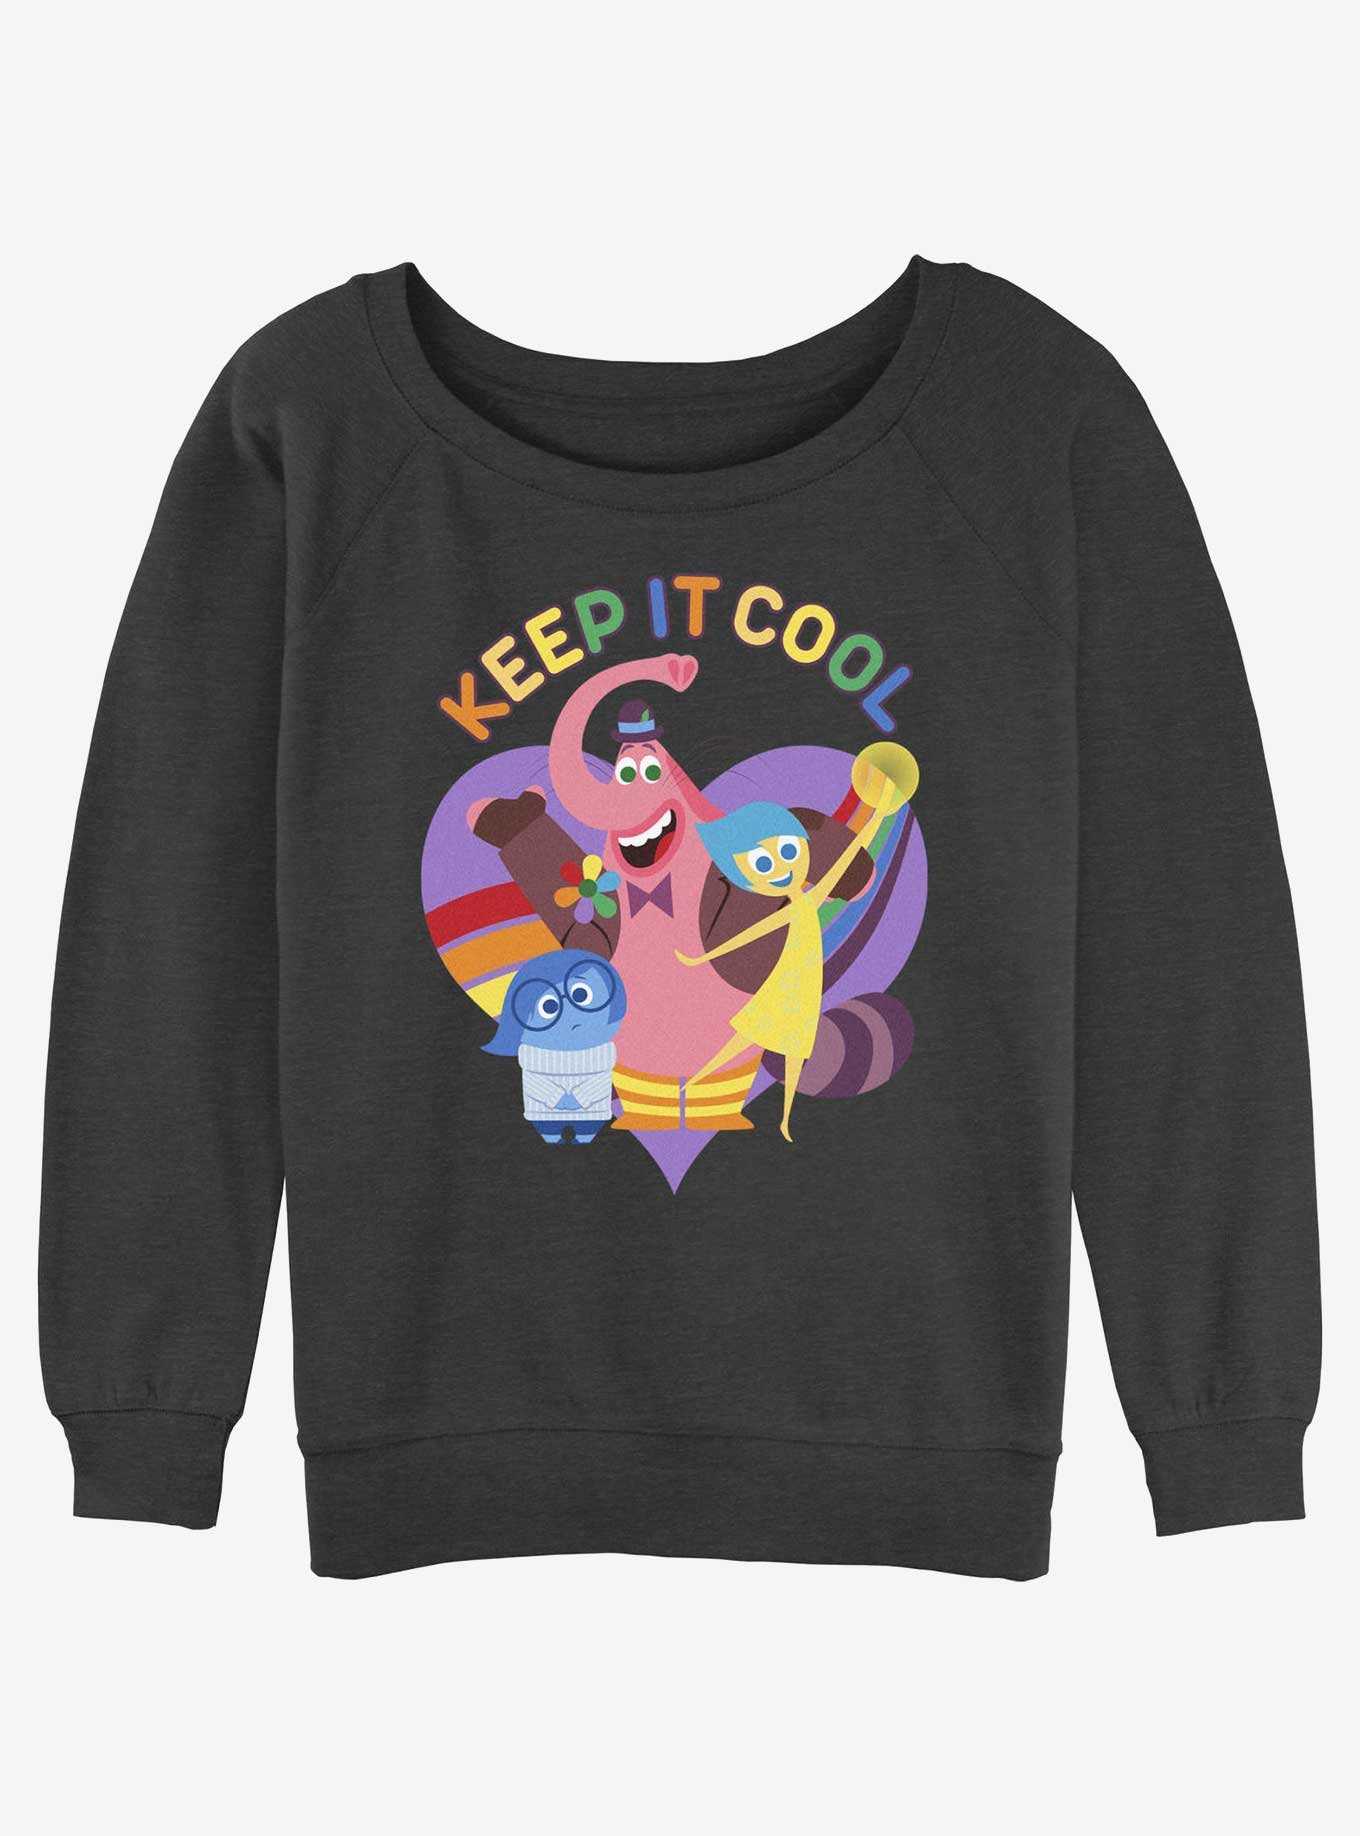 Disney Pixar Inside Out 2 Keep It Cool Womens Slouchy Sweatshirt, , hi-res